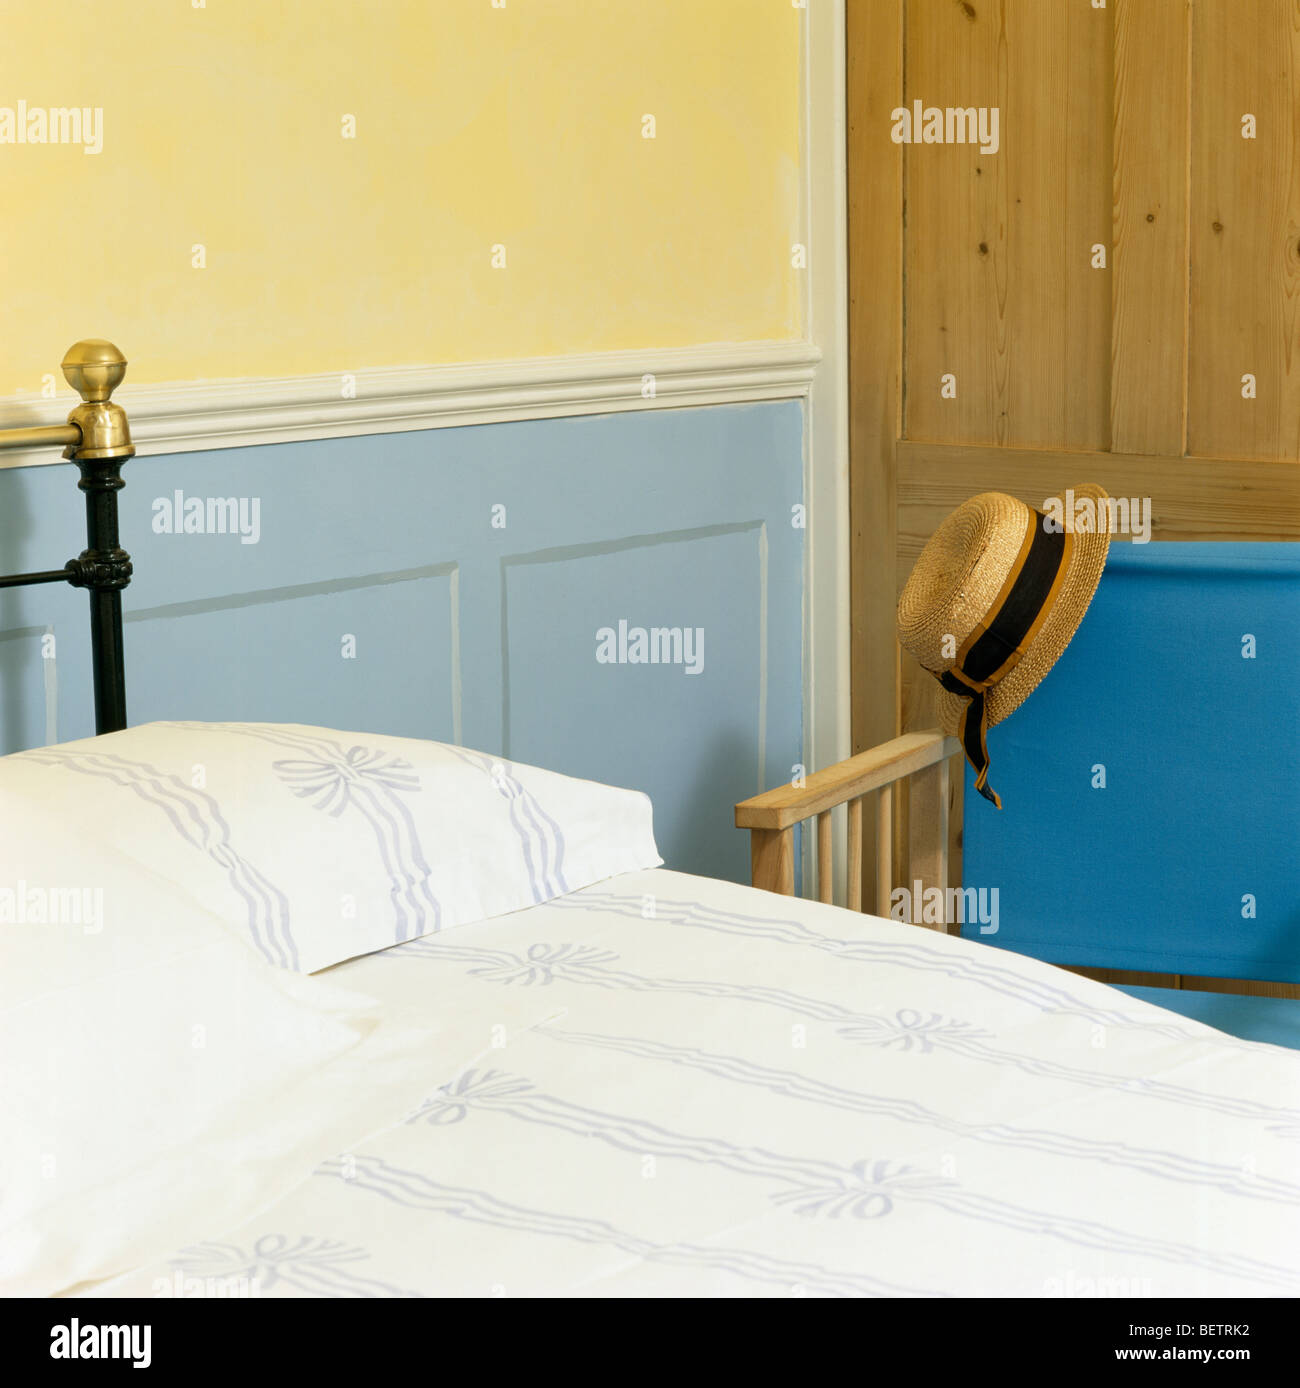 Blaue Dado Verkleidung an Wand neben Bett mit blauen + weiße Band-gemusterte Bettwäsche Stockfoto